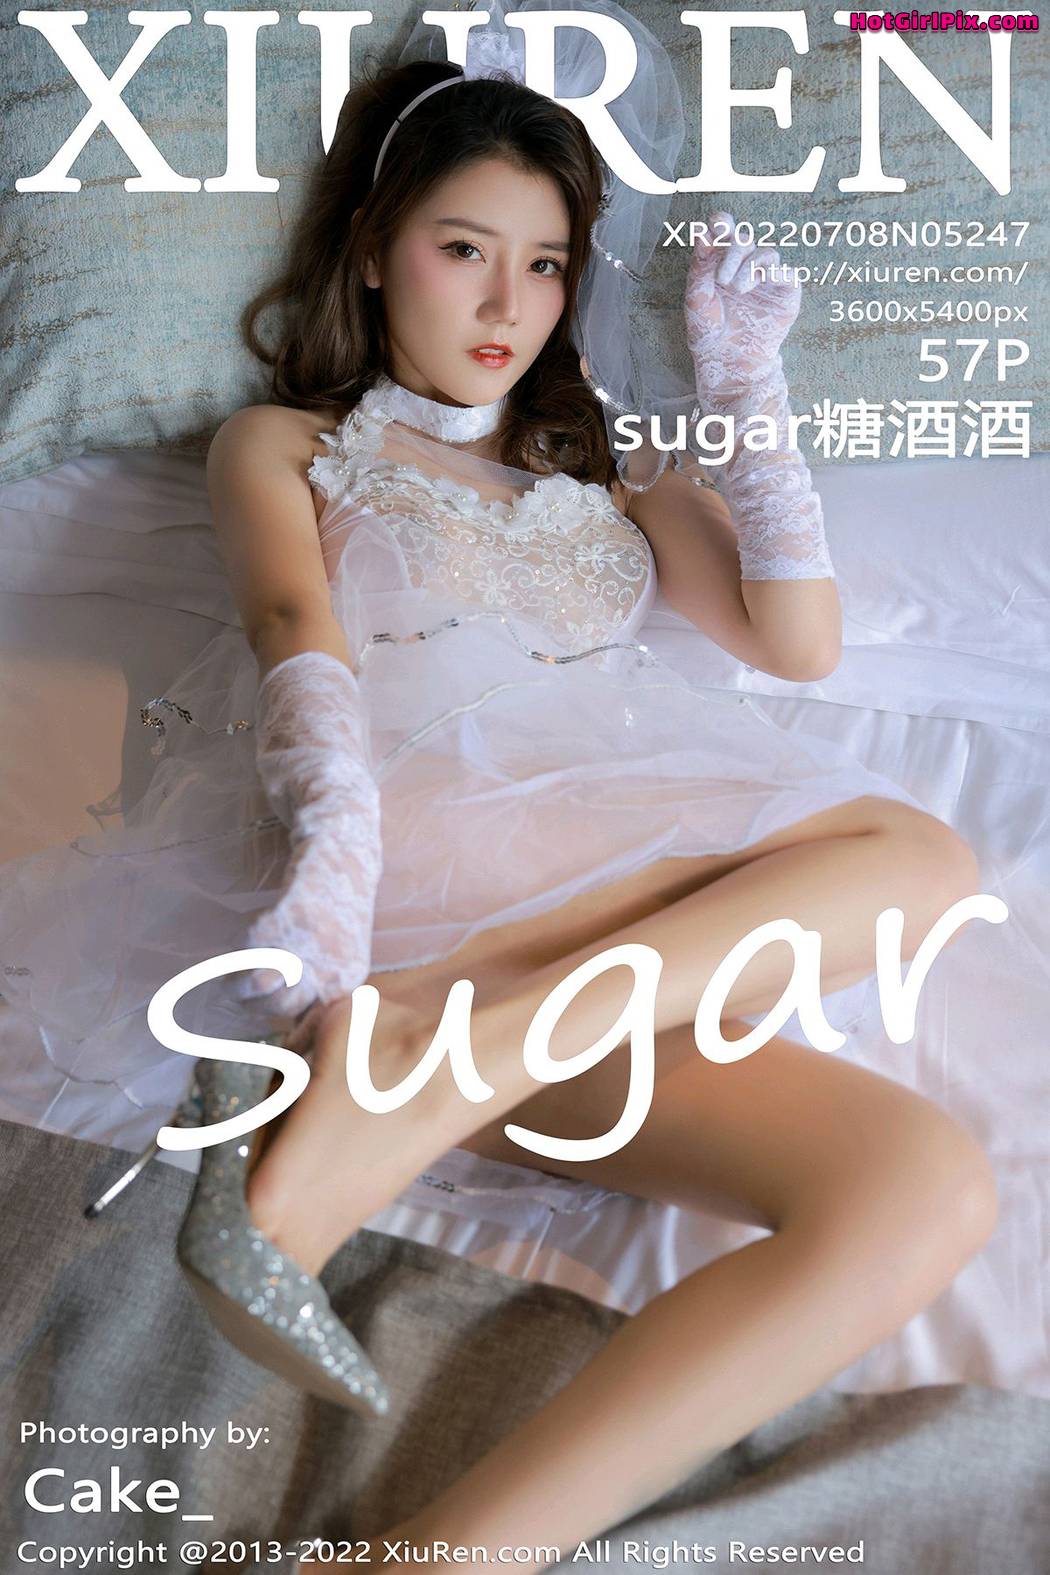 [XIUREN] No.5247 Sugar糖酒酒